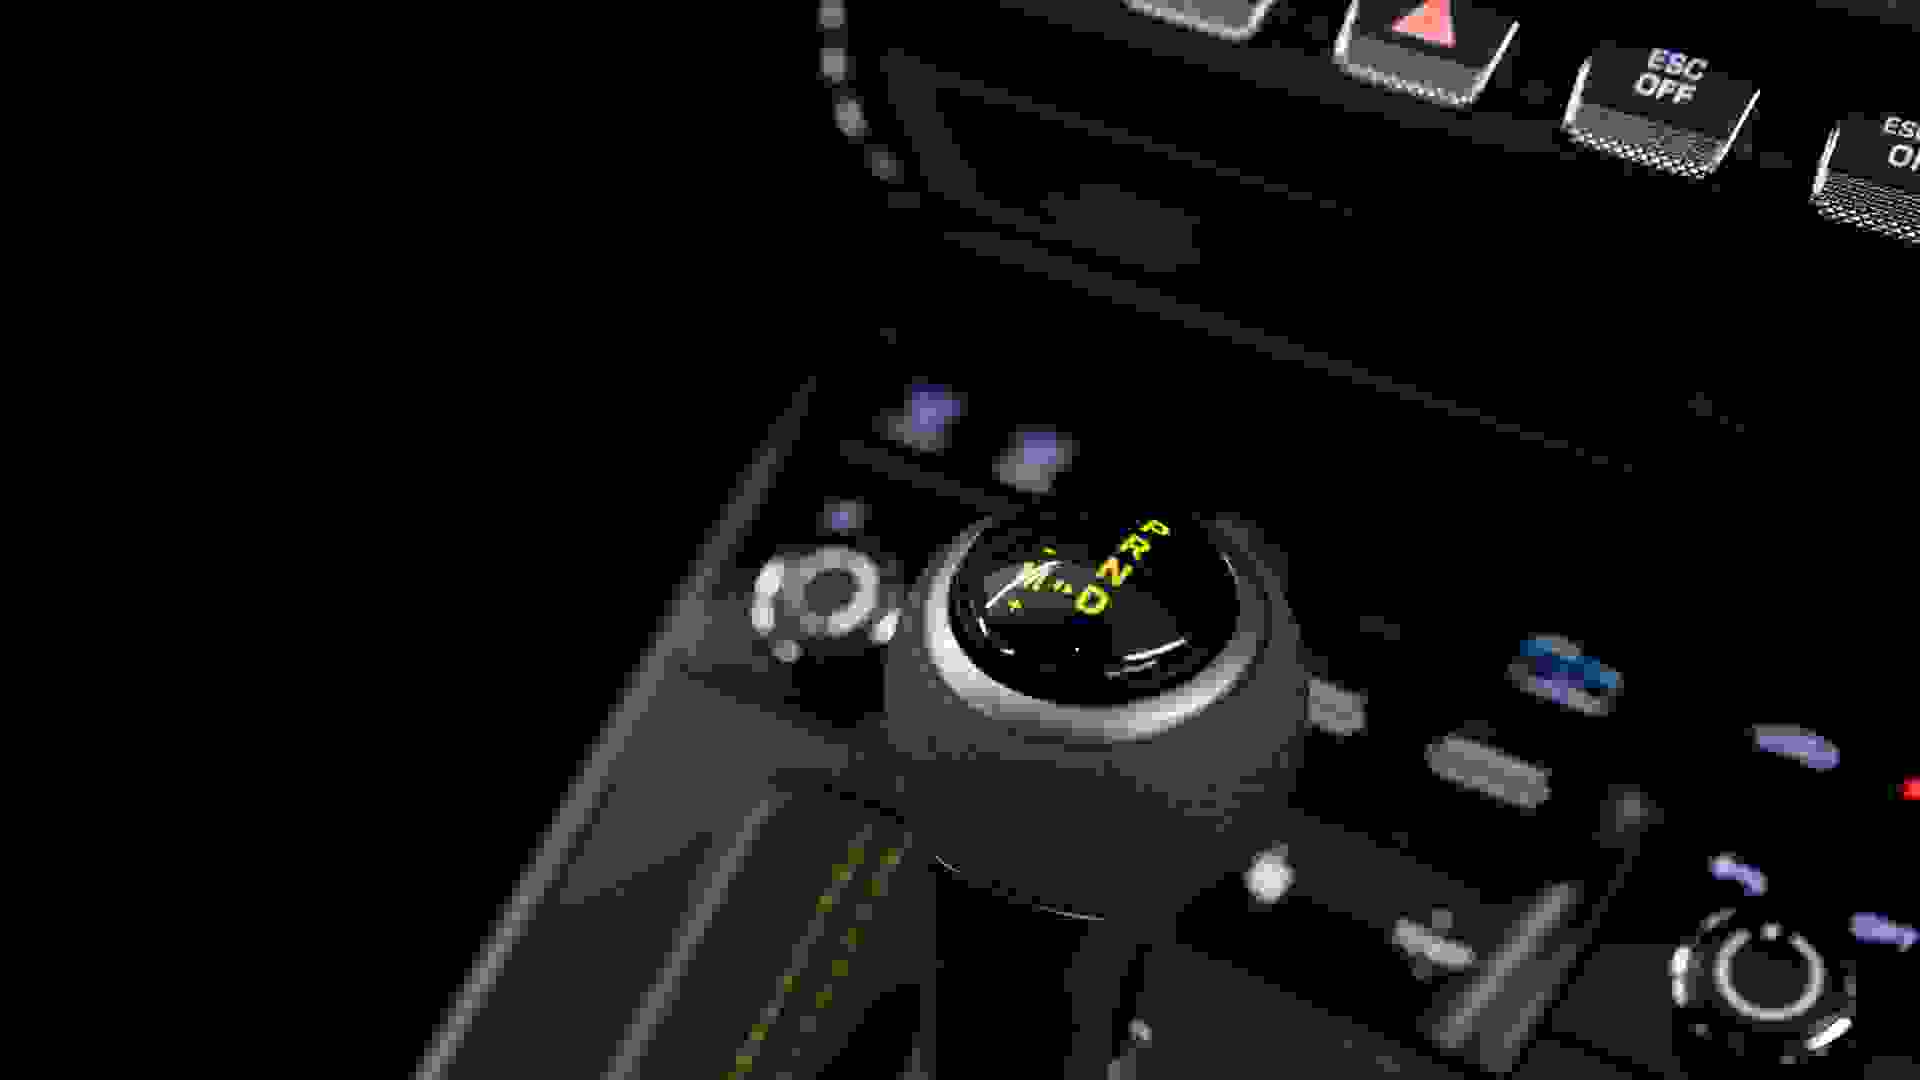 Porsche GT3 RS Photo 50e833a7-4cba-4d18-9b7c-db9f2e890612.jpg